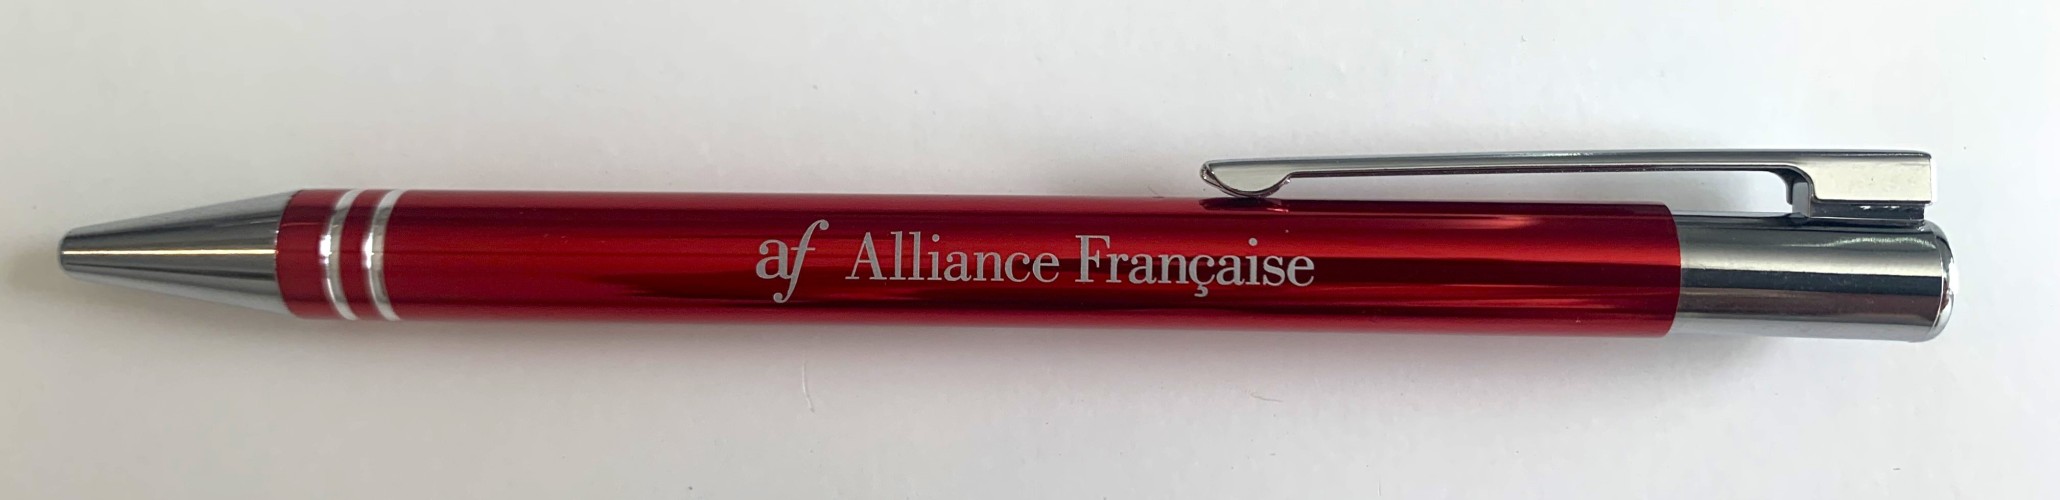 Alliance Française Pen